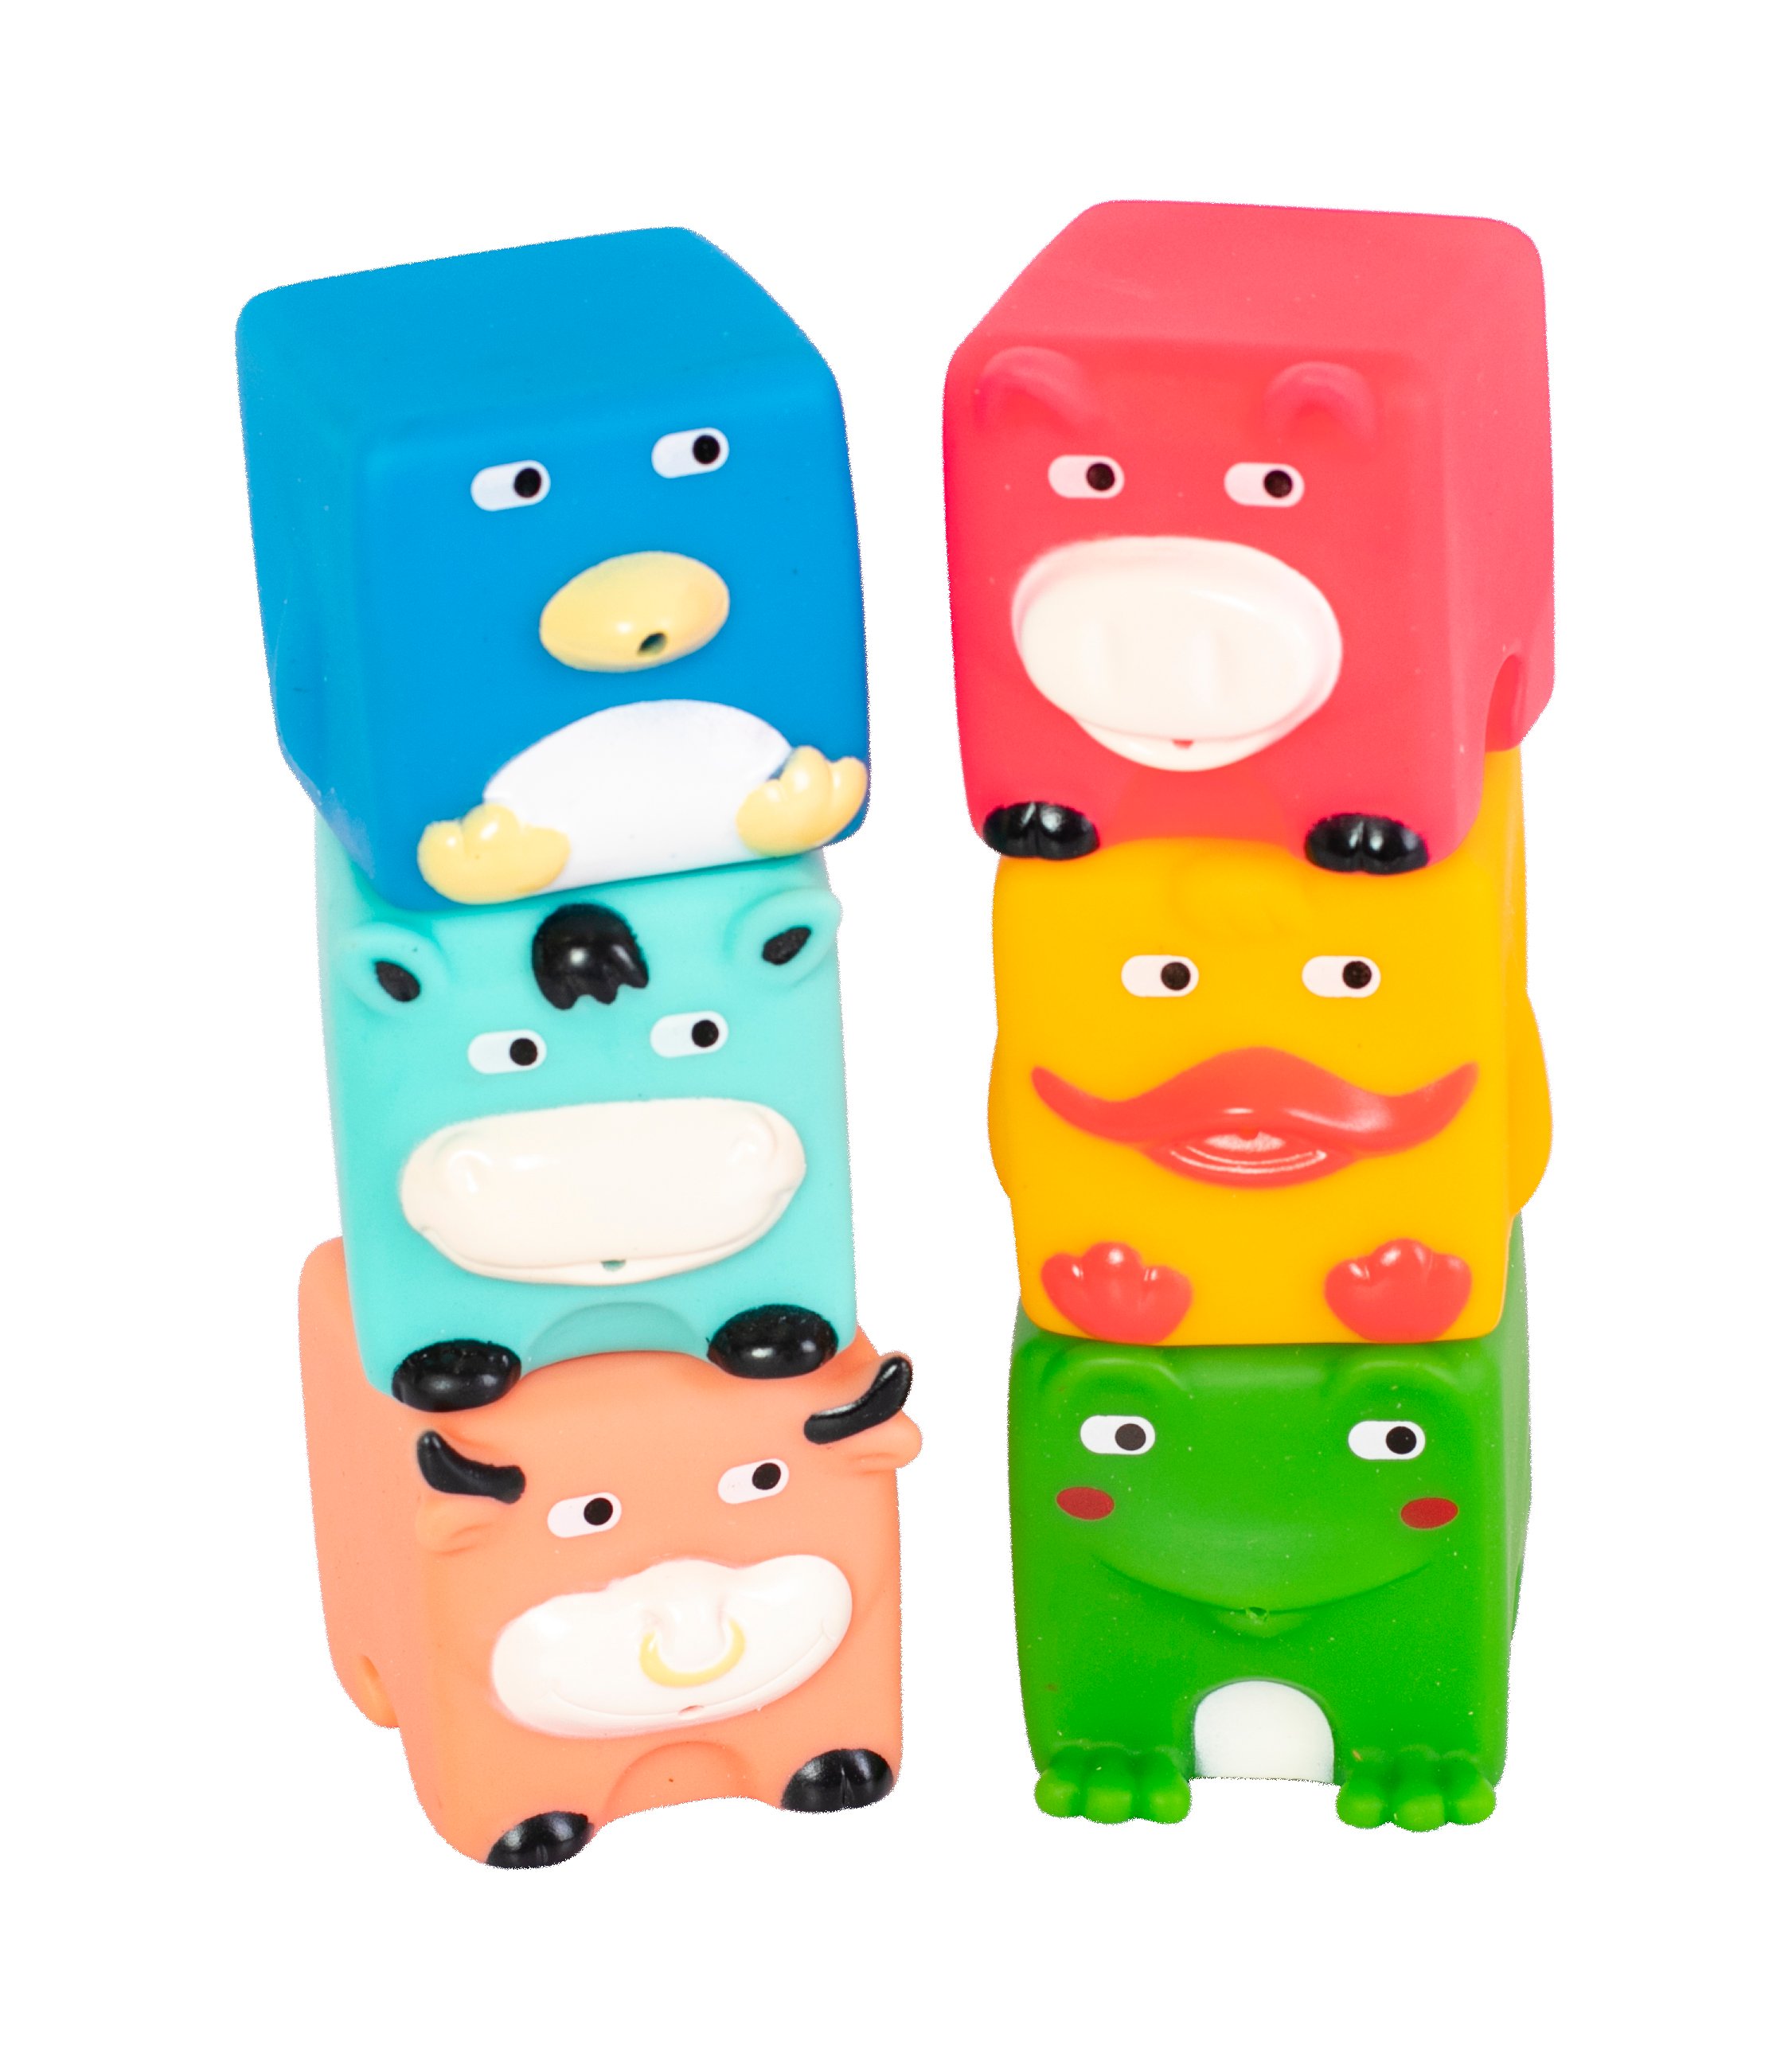 Набір іграшок для ванної Baby Team Звірята-кубики (9050_ набор с утенком) - фото 1